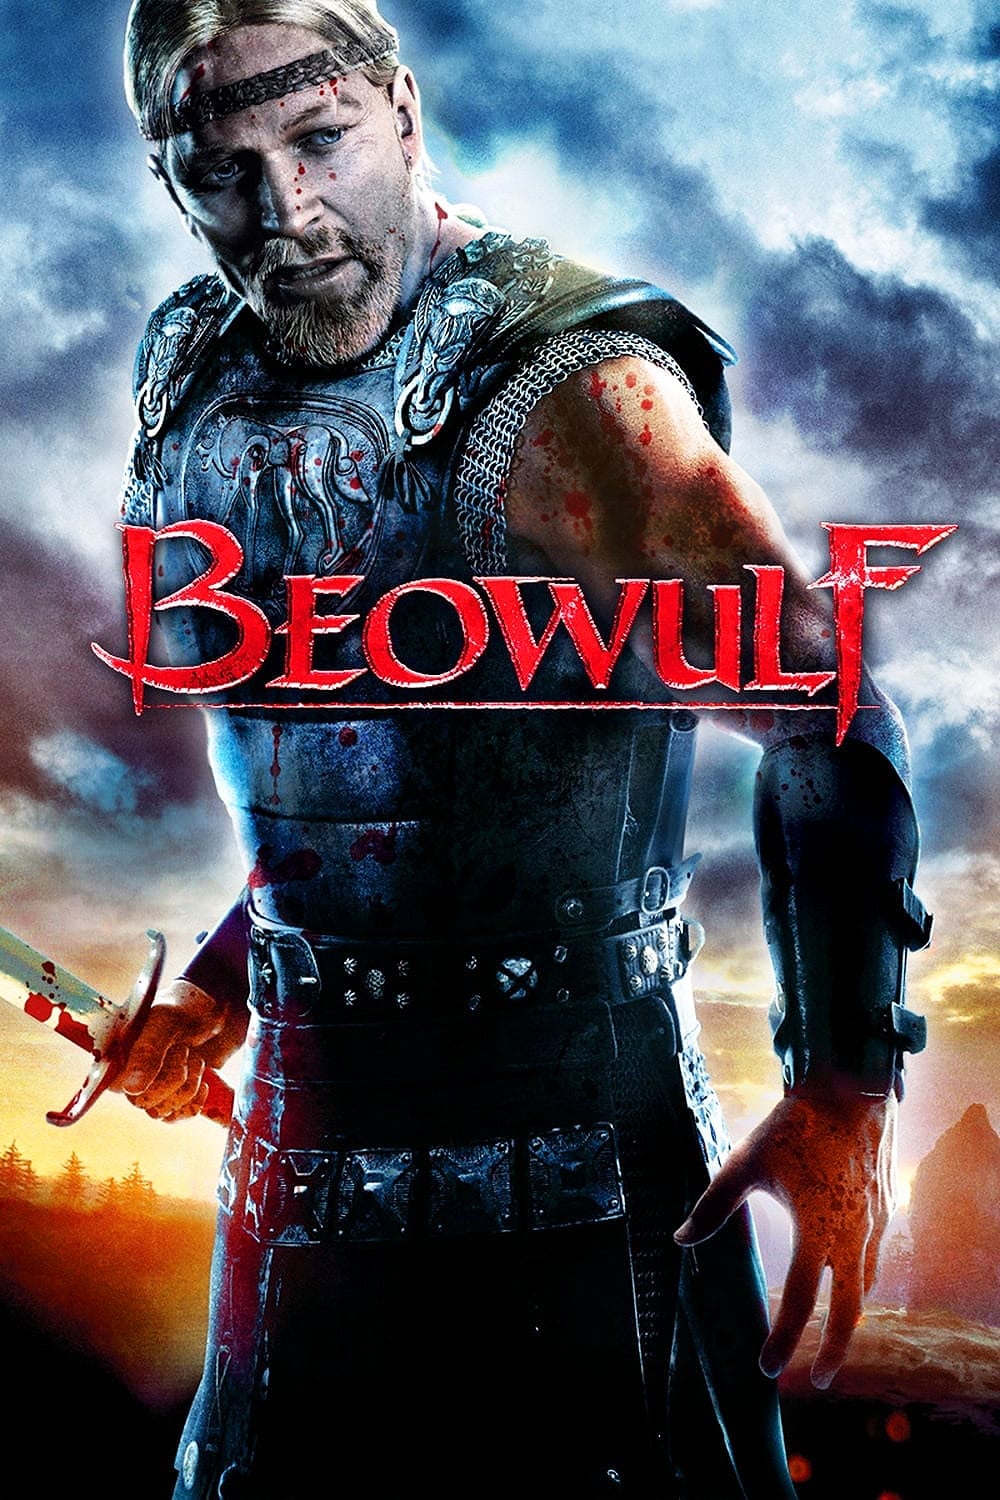 Beowulf: Ác Quỷ Lộng Hành (Beowulf) [2007]